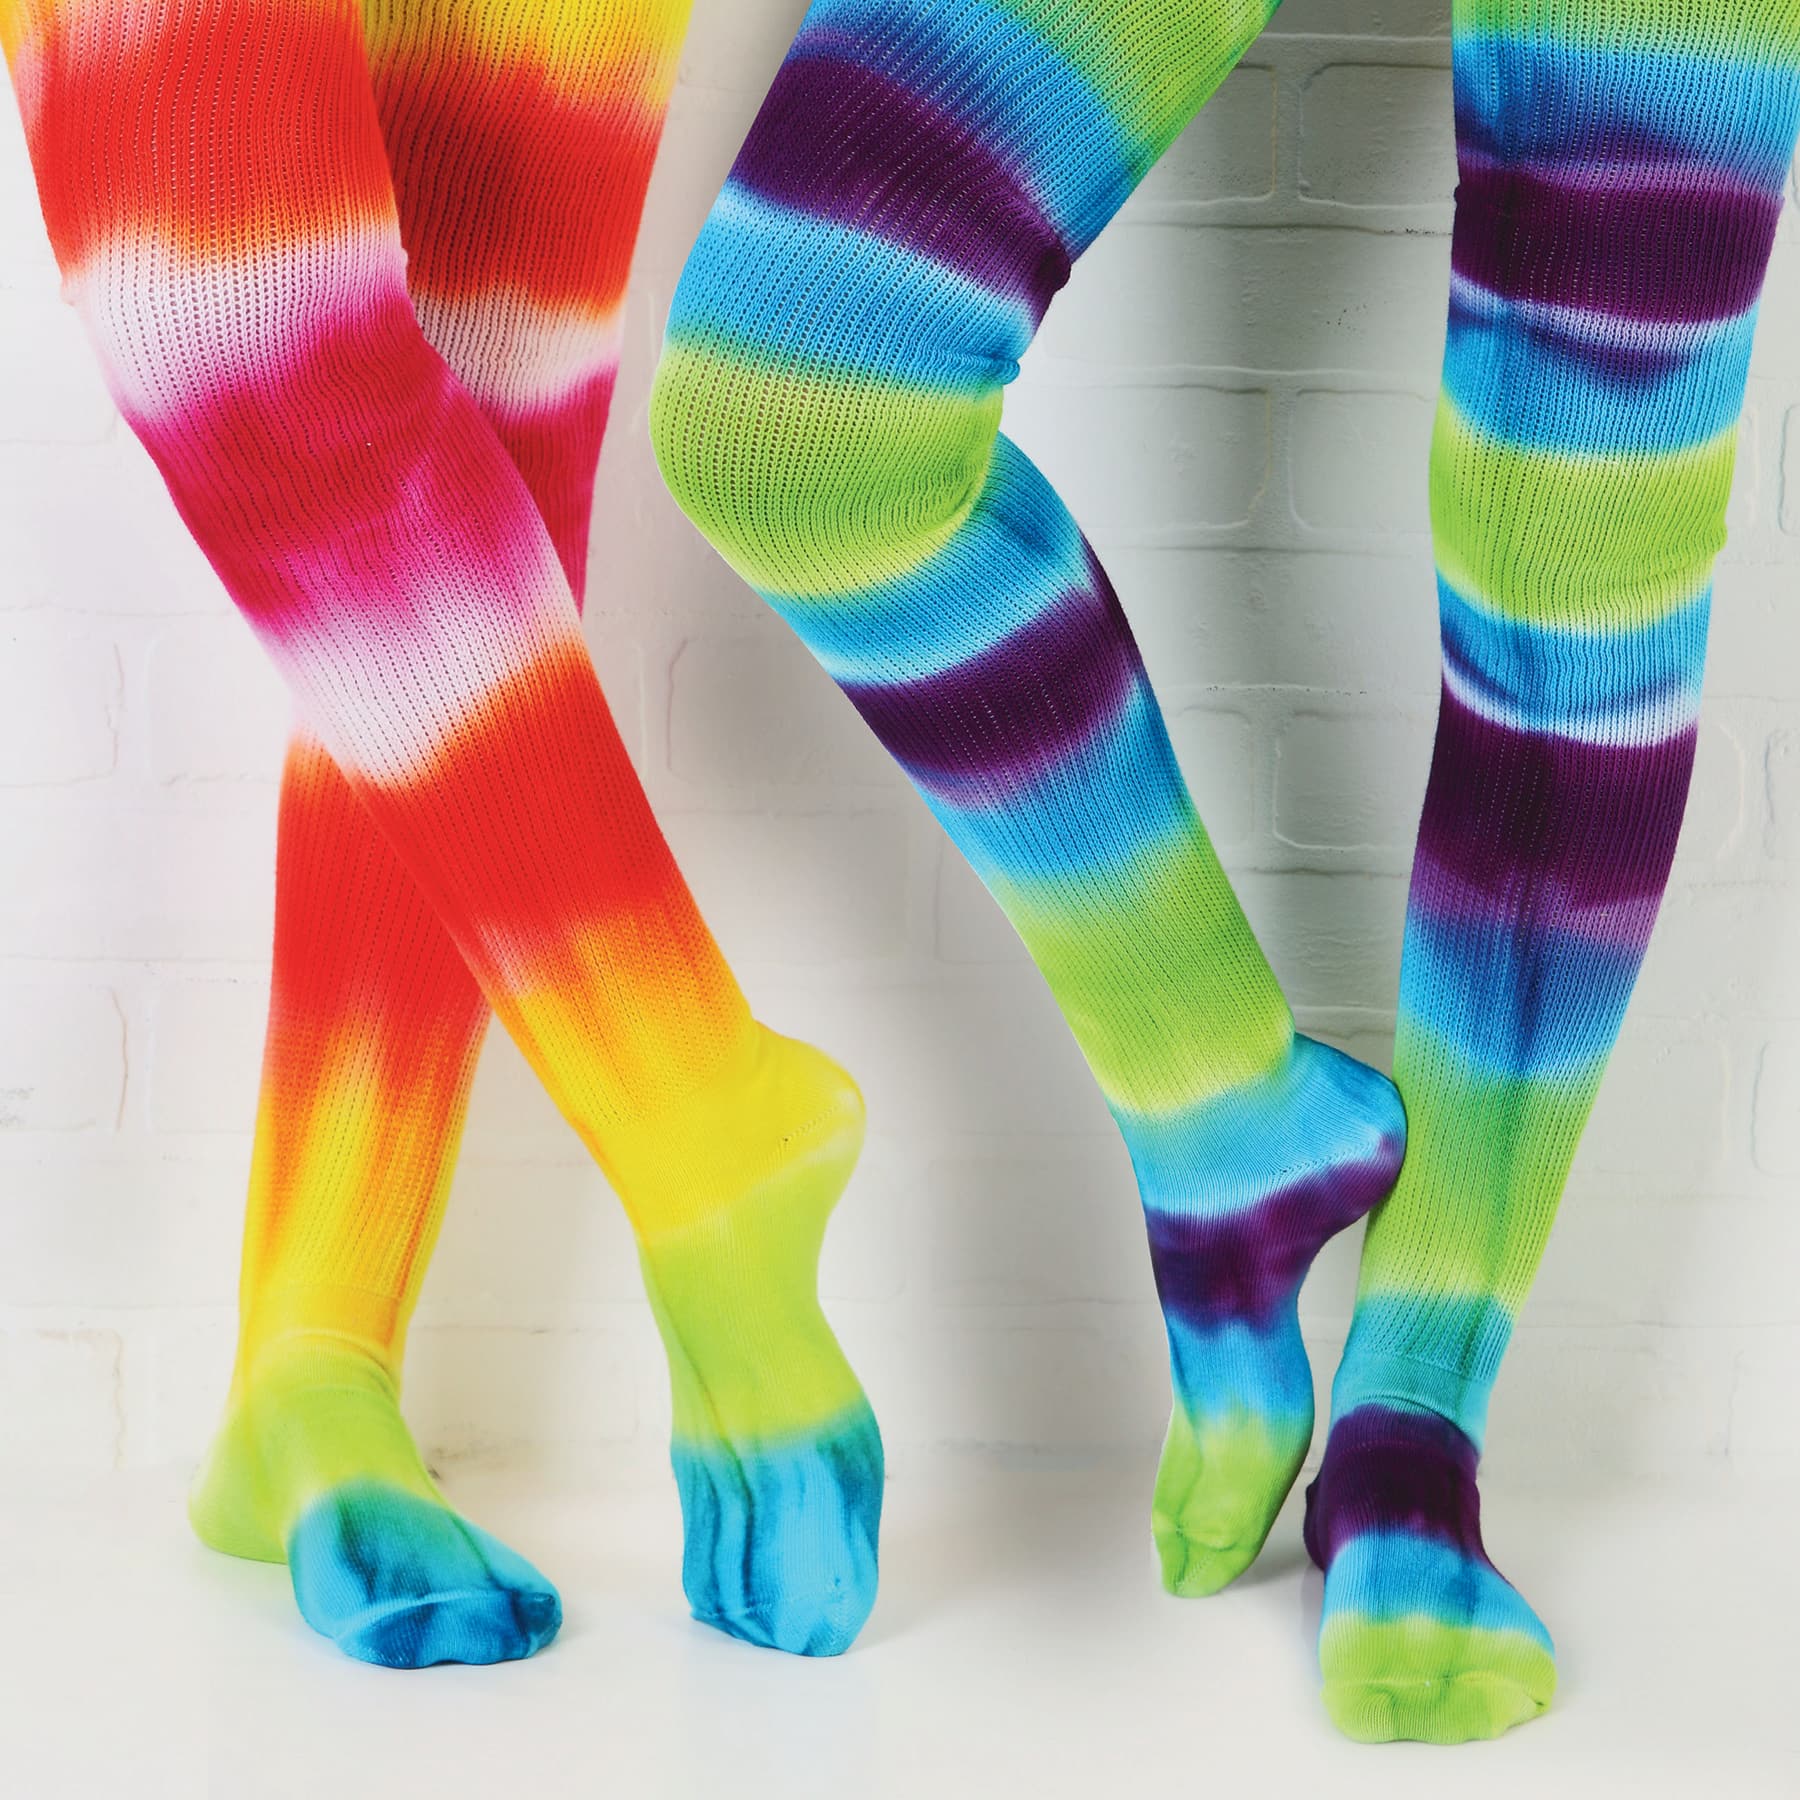 Tulip&#xAE; One-Step Tie-Dye Kit&#xAE;, Large